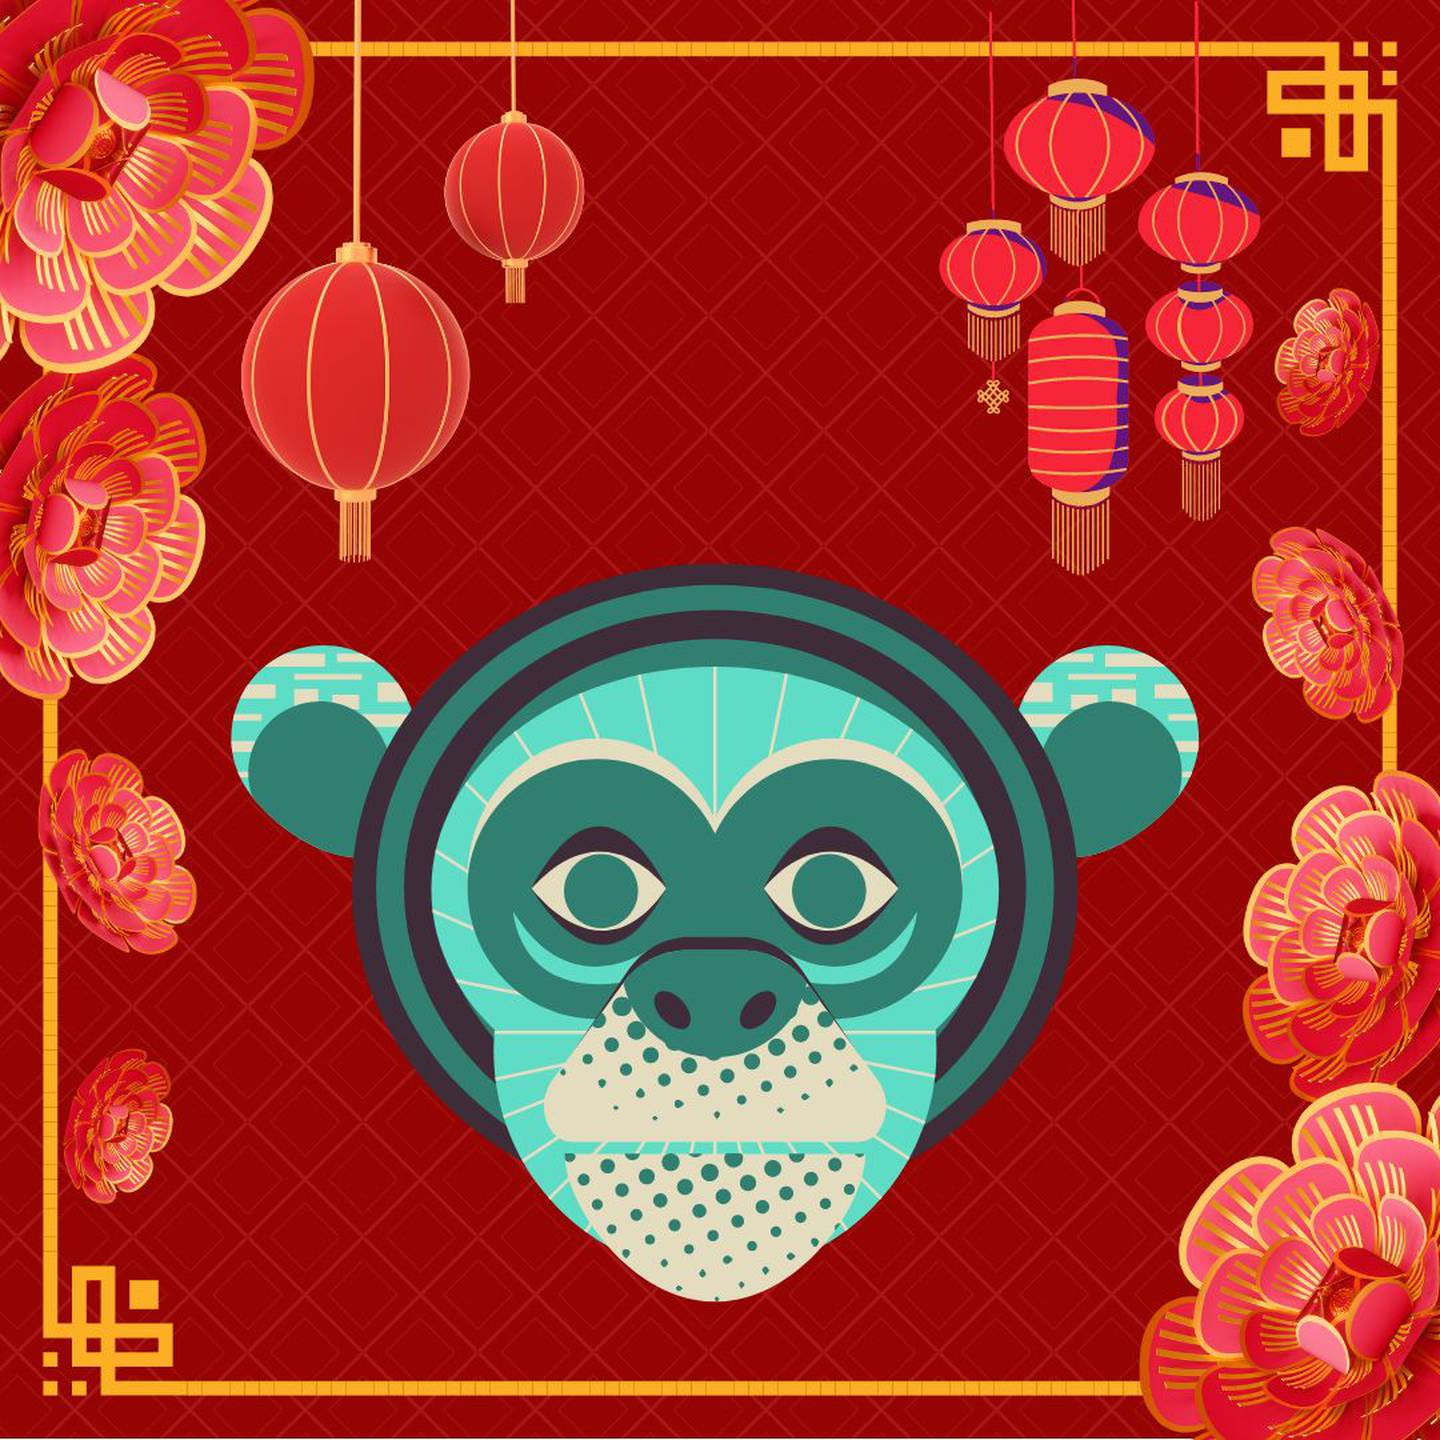 Caricatura de la cara de un mono sobre un fondo rojo con motivos decorativos orientales